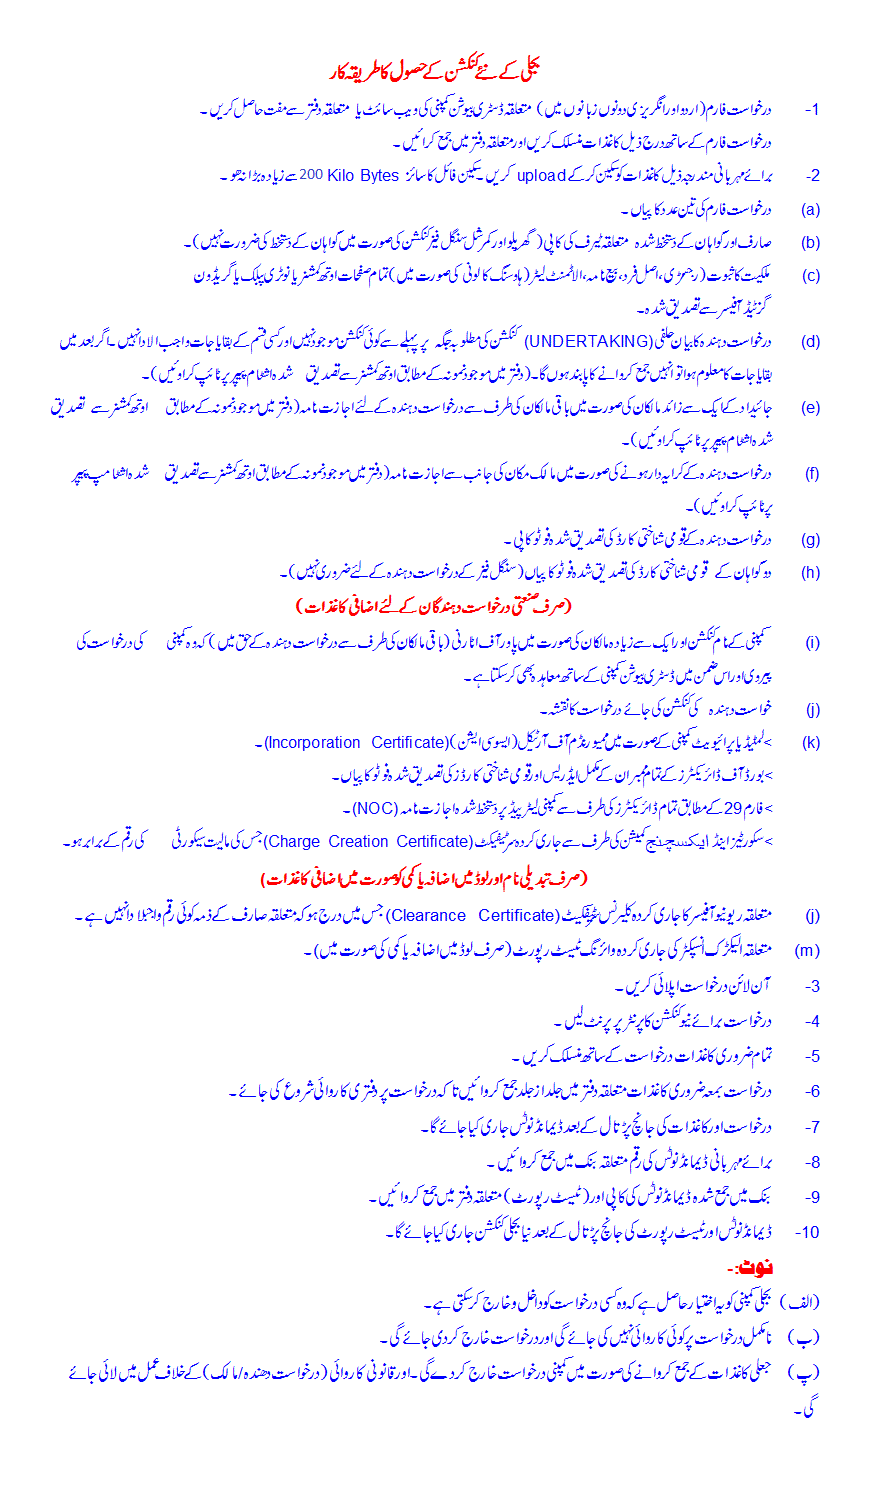 MEPCO Application Procedure in Urdu